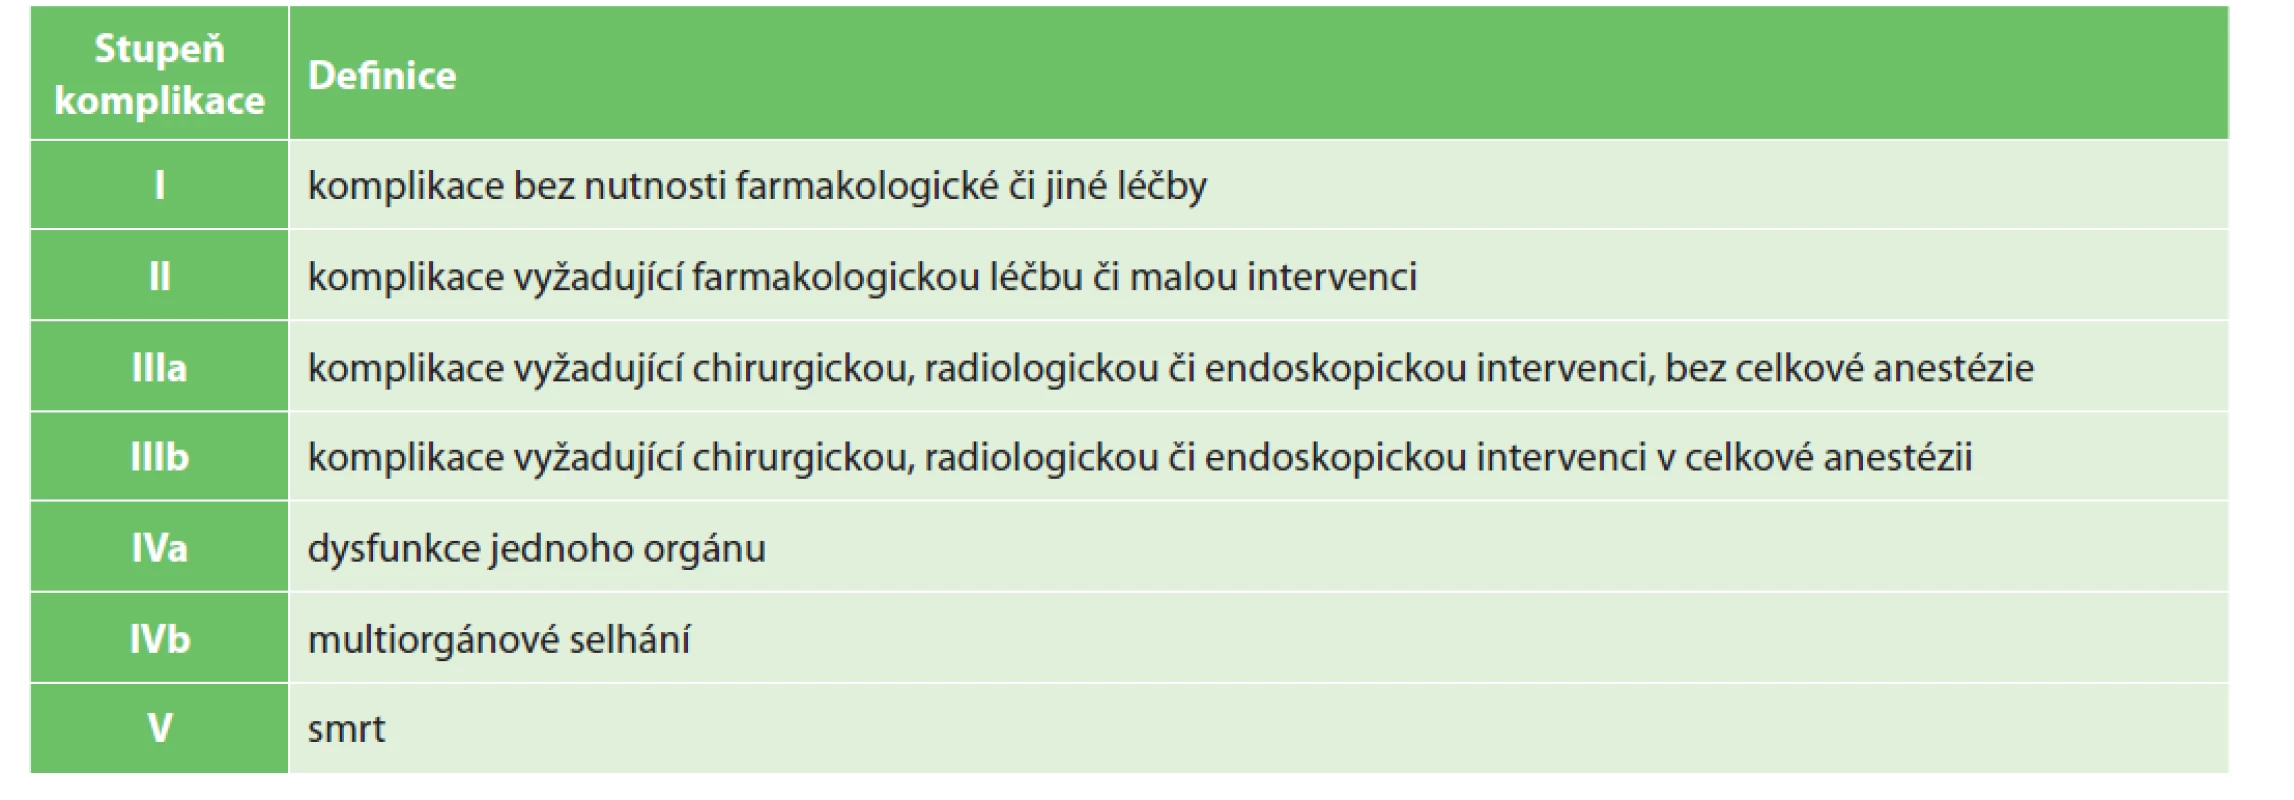 Klasifikace komplikací v hrudní chirurgii (Clavien-Dindo)<br>
Tab. 5: Classification of complications after thoracic surgery (Clavien-Dindo)